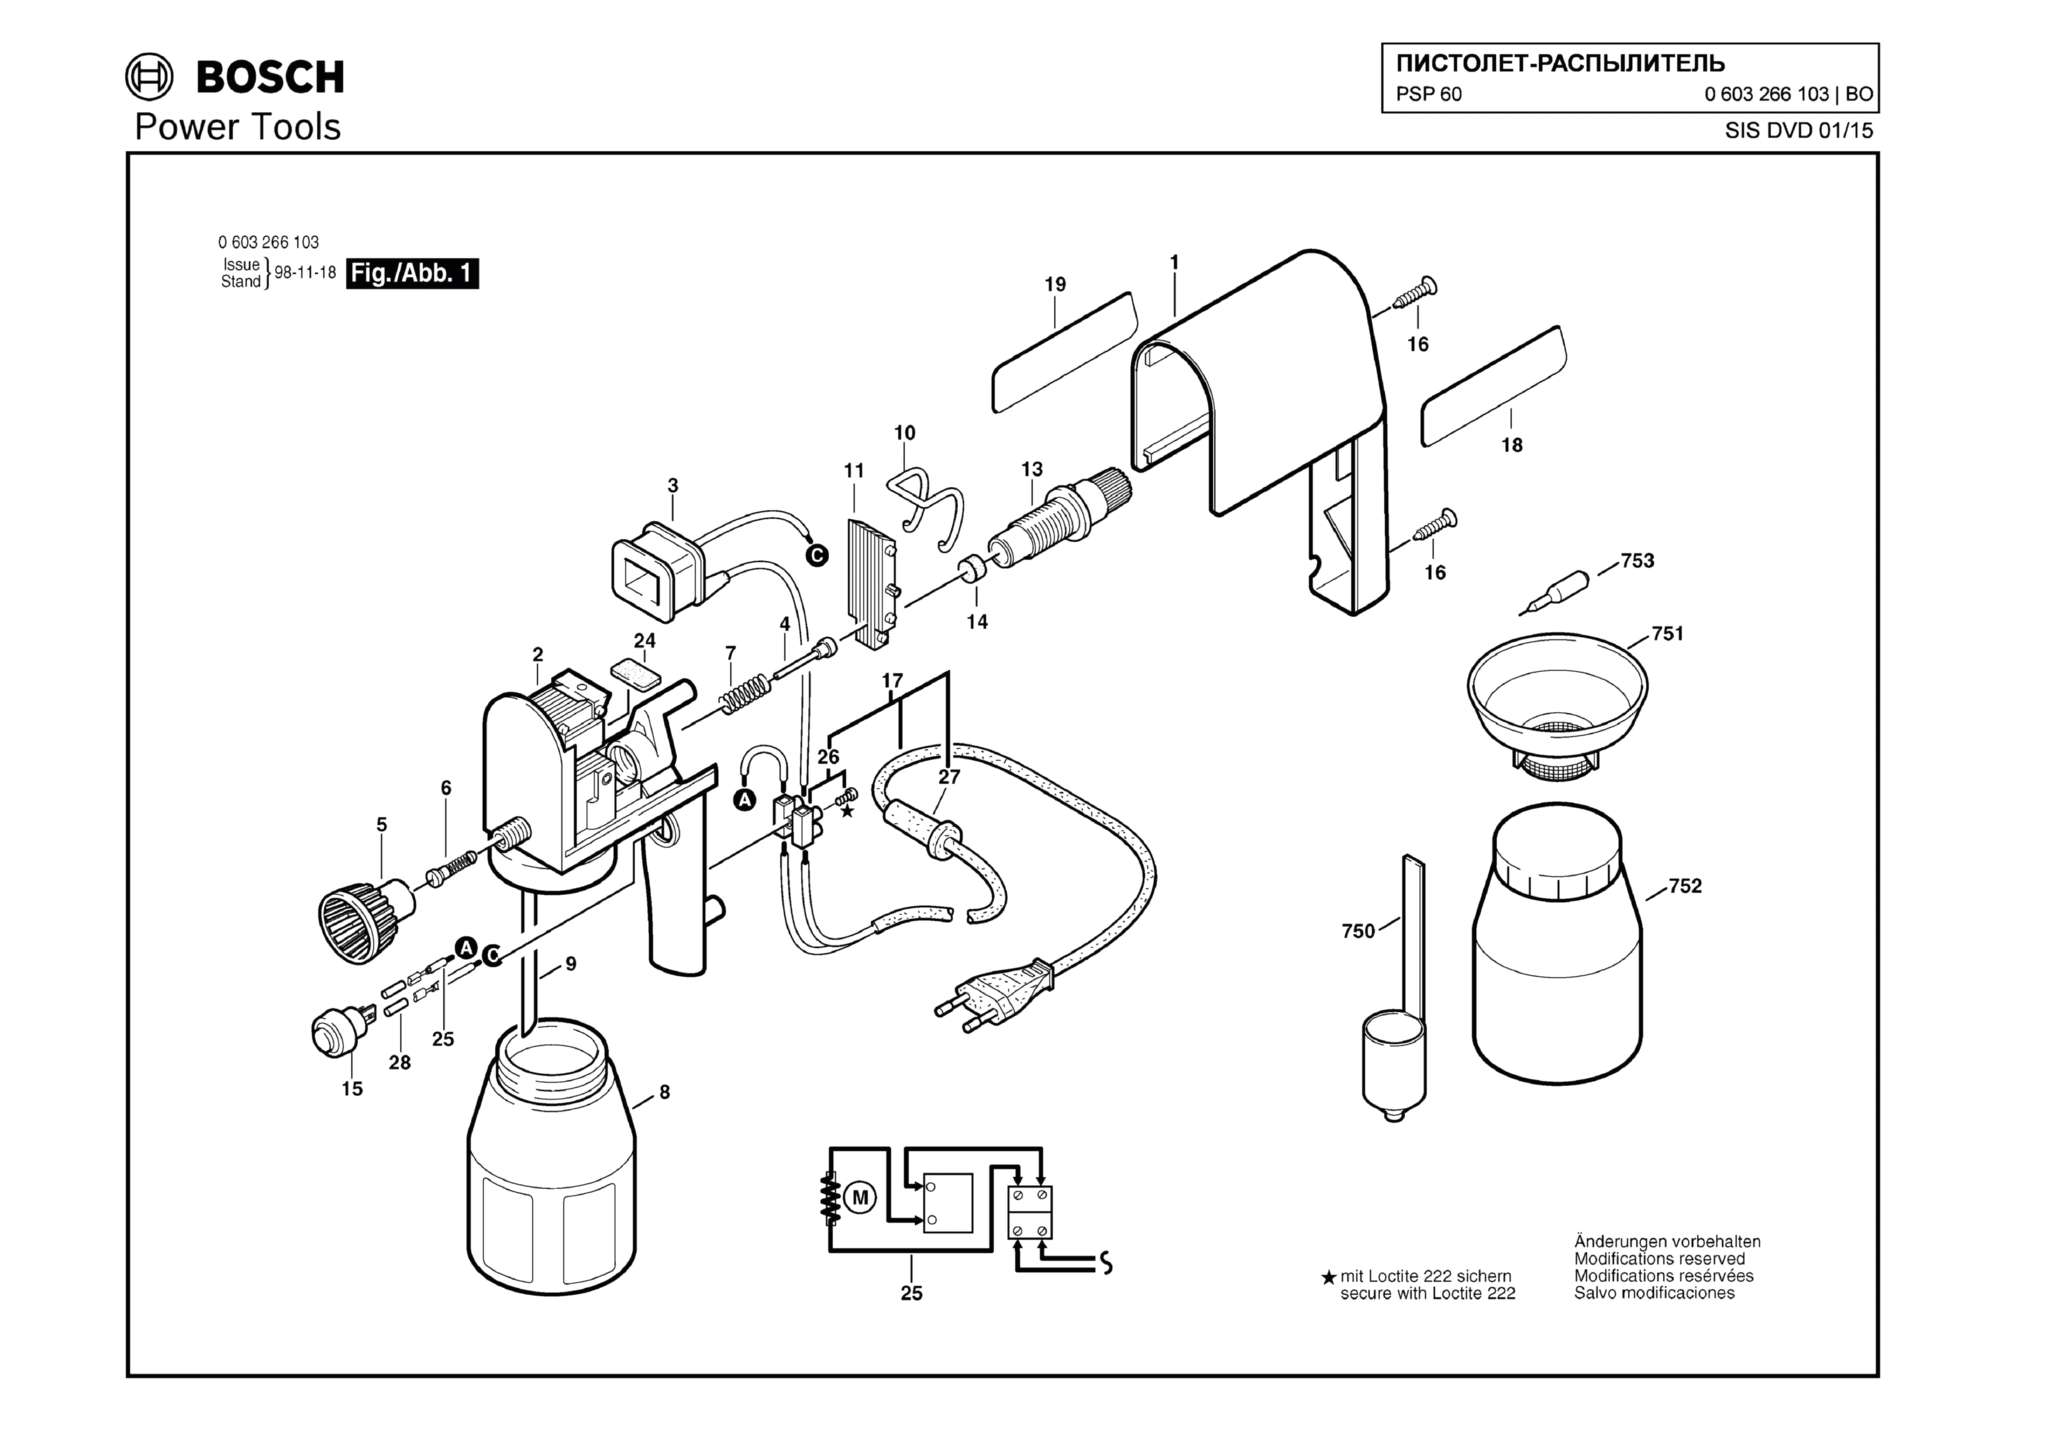 Запчасти, схема и деталировка Bosch PSP 60 (ТИП 0603266103)